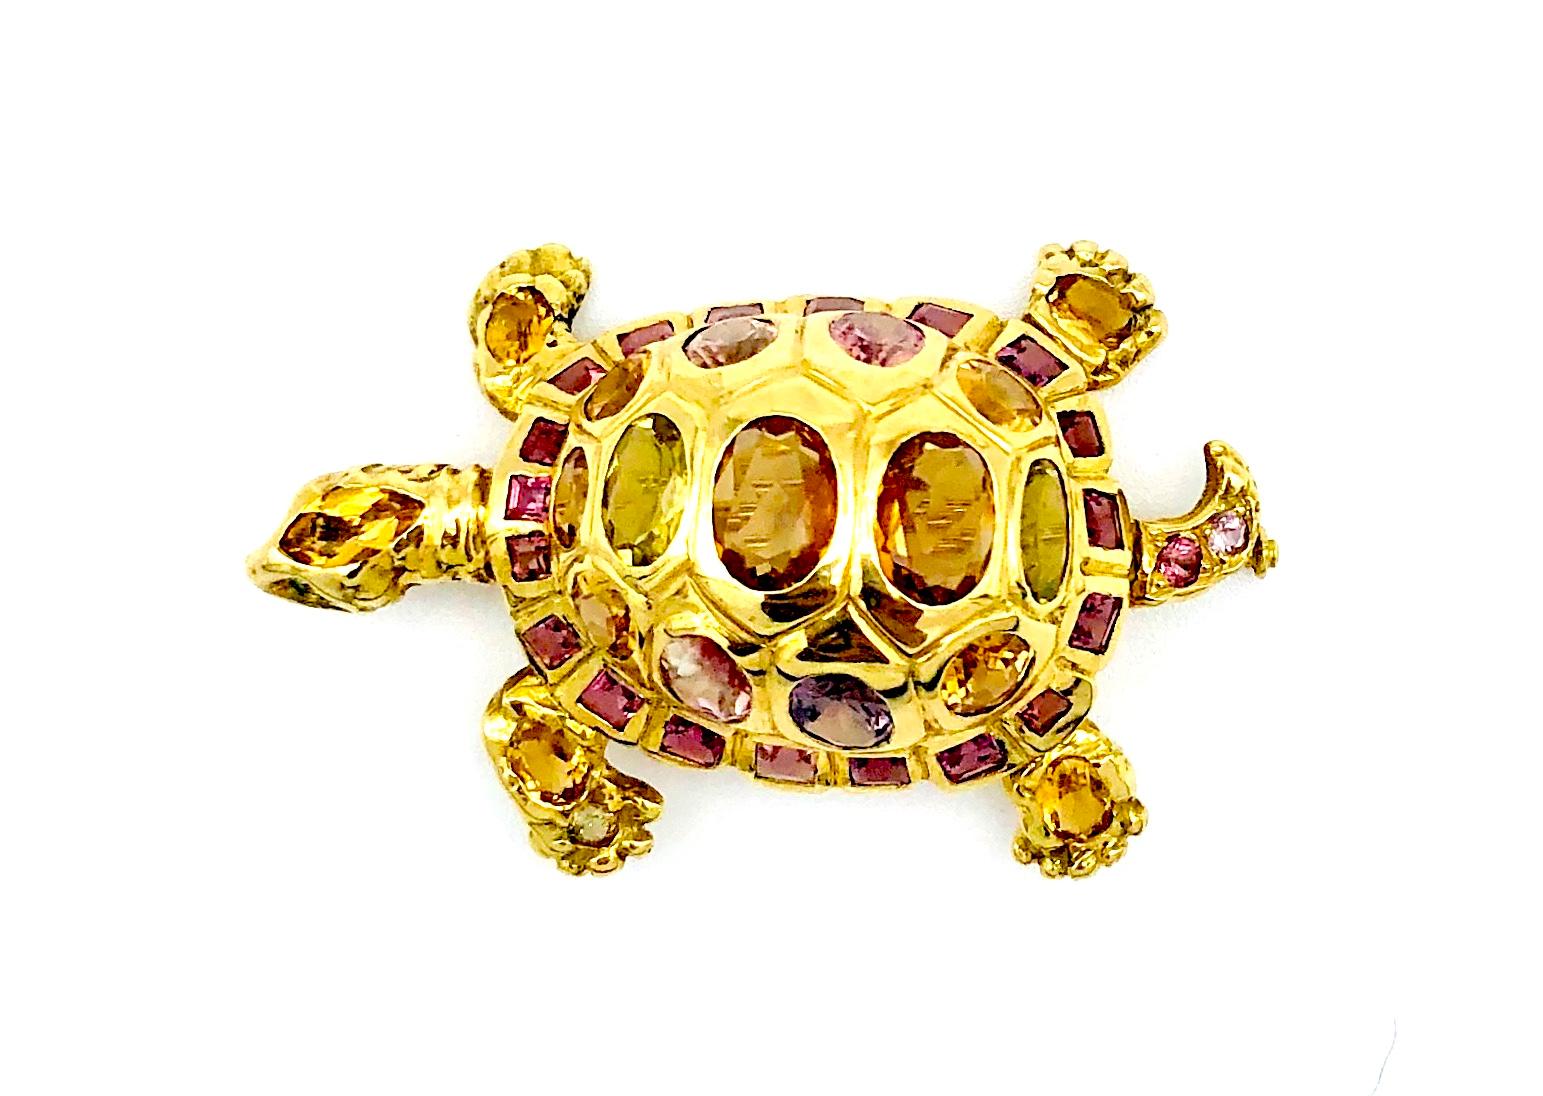 Diese wunderbar klobige und exzellent modellierte 18-karätige Schildkröte wurde von dem Münchner Goldschmiedemeister Günther Hahn als Anhänger / Brosche montiert. Das hübsche Tier ist mit 40 verschiedenfarbigen Turmalinen im Oval- und Quadratschliff